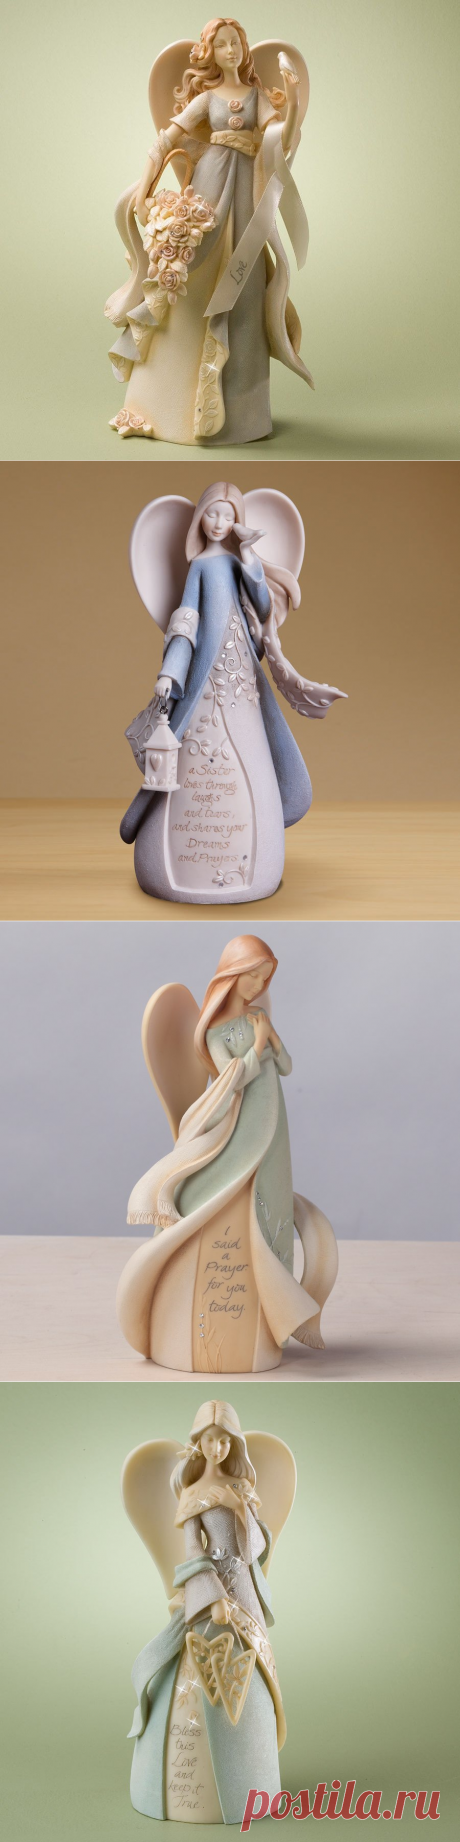 Керамика от Karen Hahn - Ангелы.